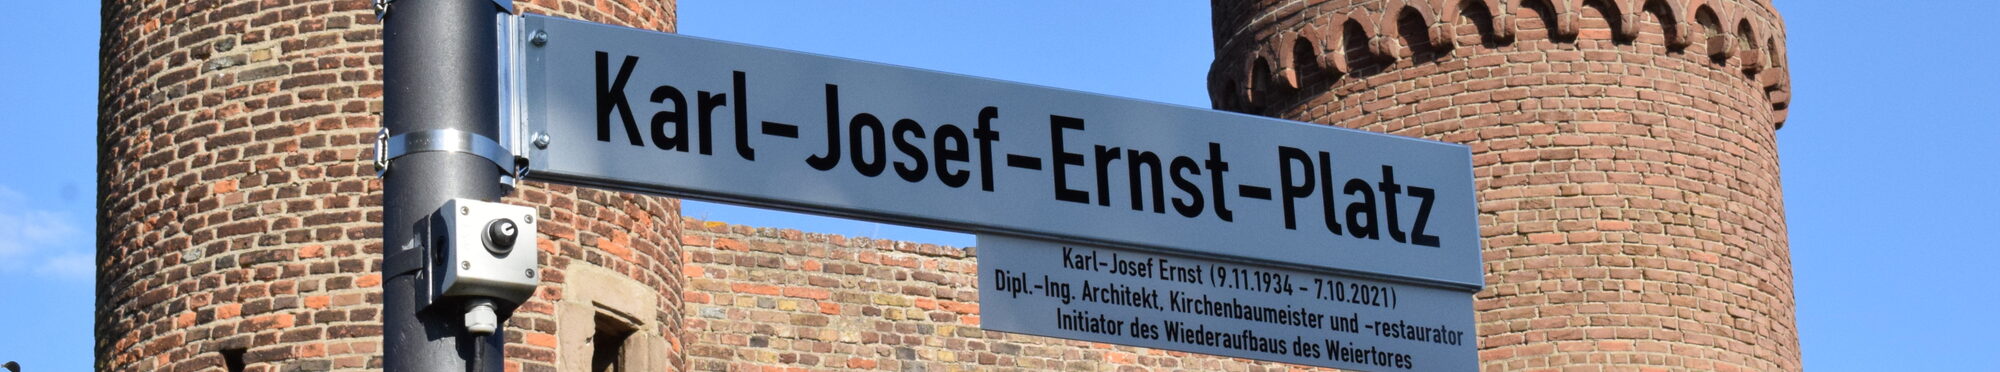 Karl-Josef-Ernst-Platz Einweihung